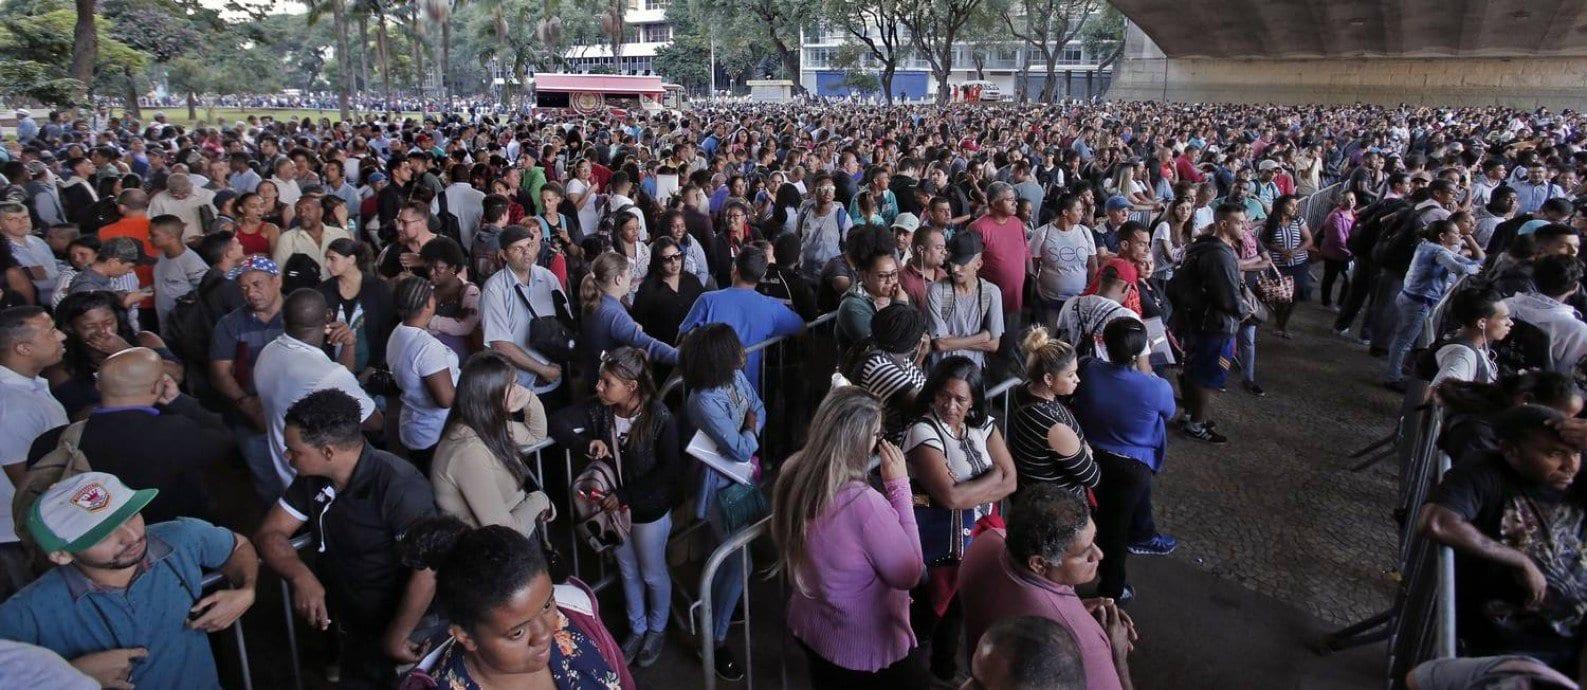 Taxa de desemprego fica em 12,4% no trimestre até fevereiro, revela IBGE